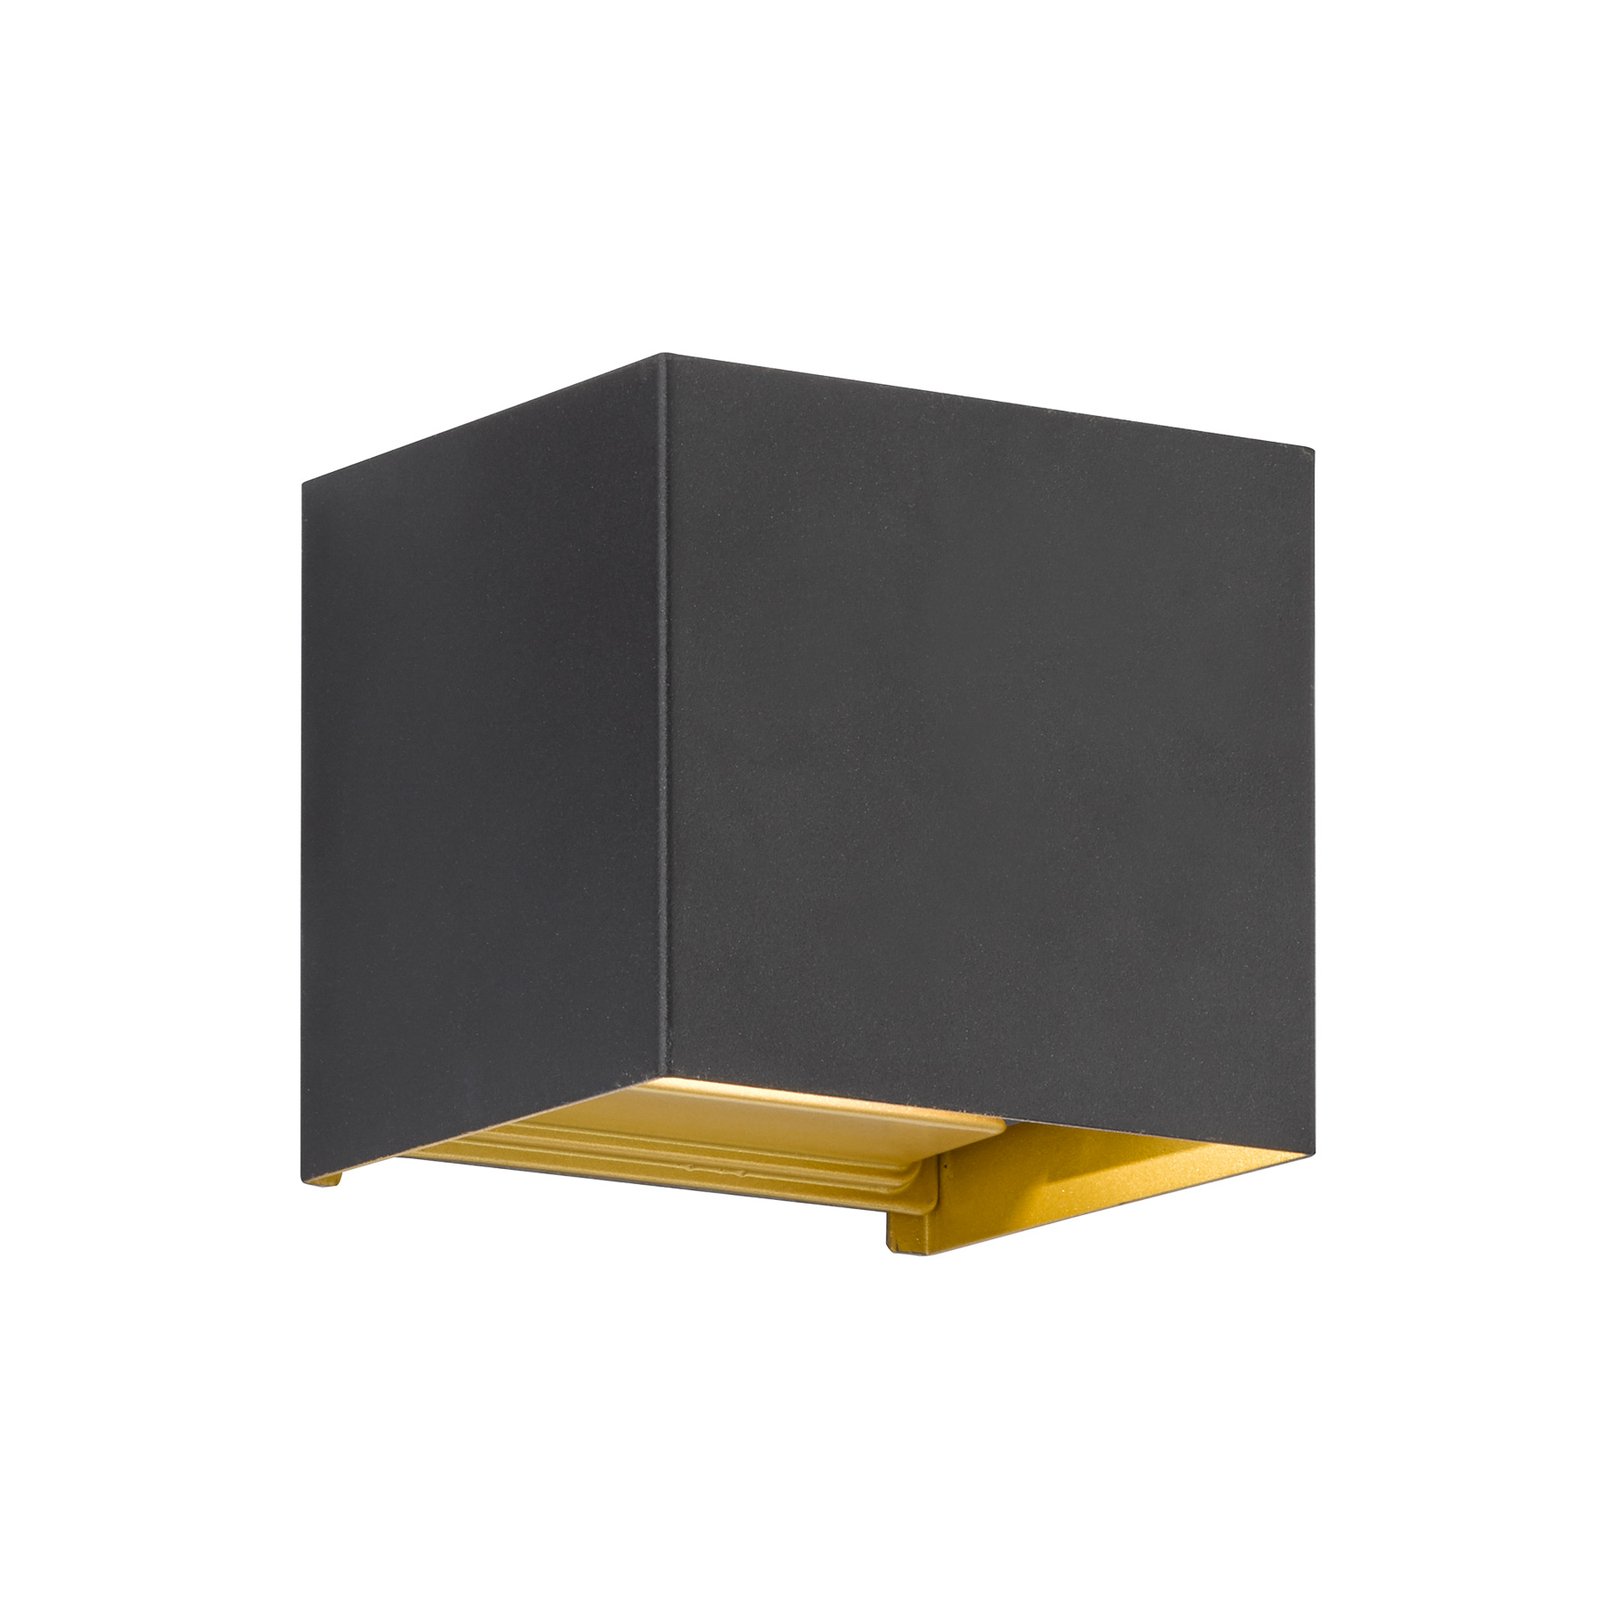 Φωτιστικό εξωτερικού χώρου Thore LED, μαύρο/χρυσό χρώμα, πλάτος 11 cm